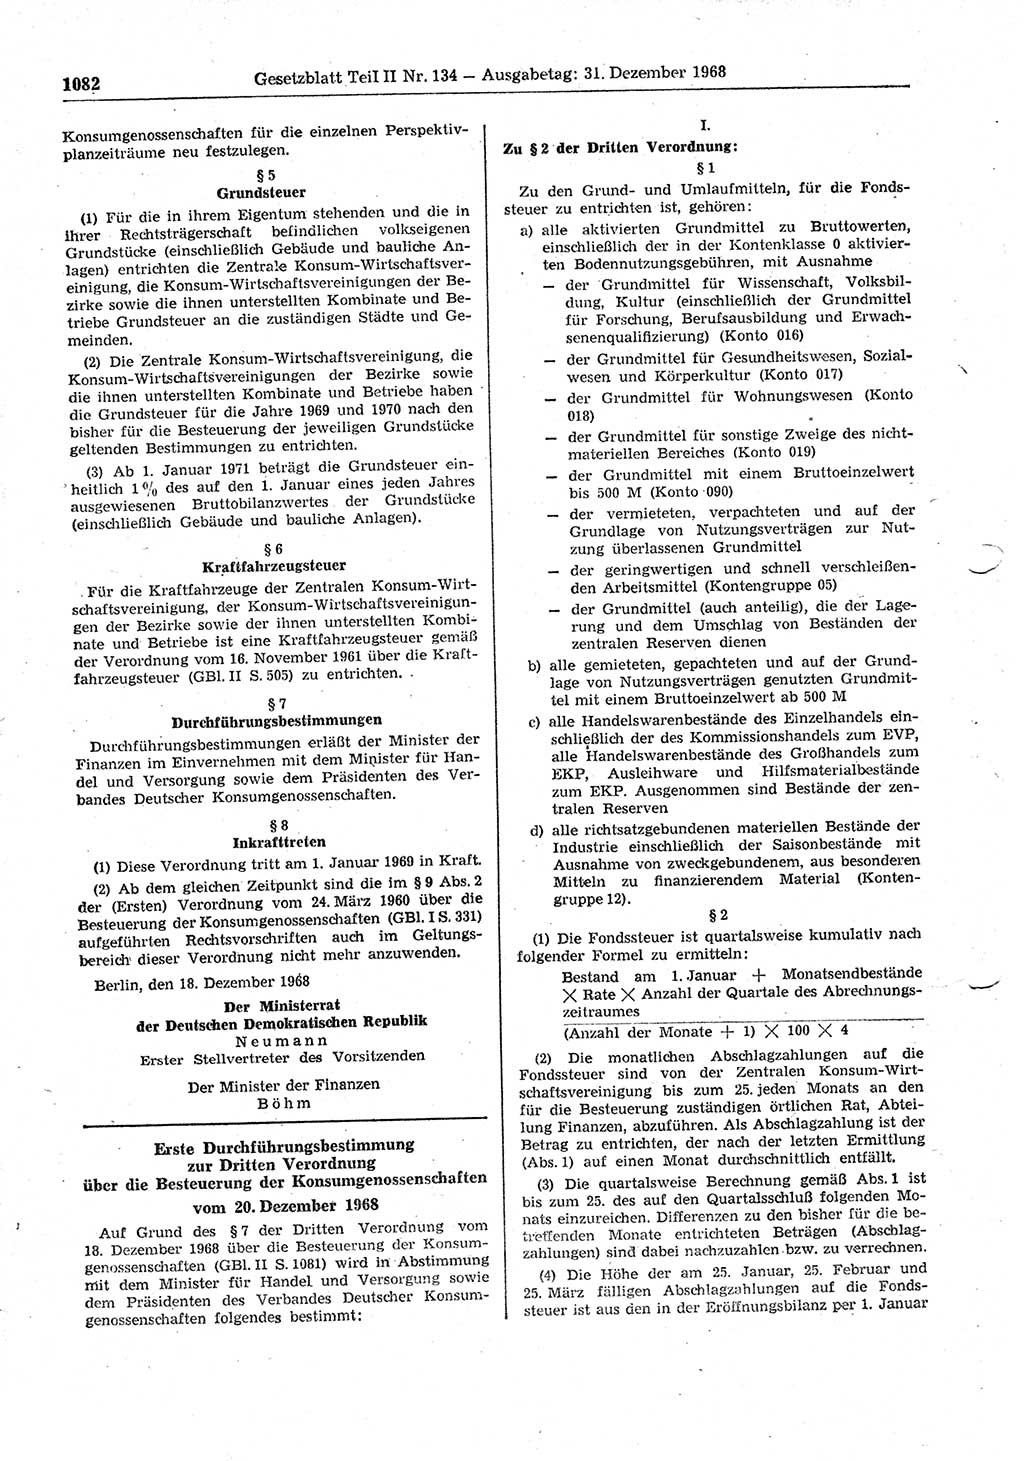 Gesetzblatt (GBl.) der Deutschen Demokratischen Republik (DDR) Teil ⅠⅠ 1968, Seite 1082 (GBl. DDR ⅠⅠ 1968, S. 1082)